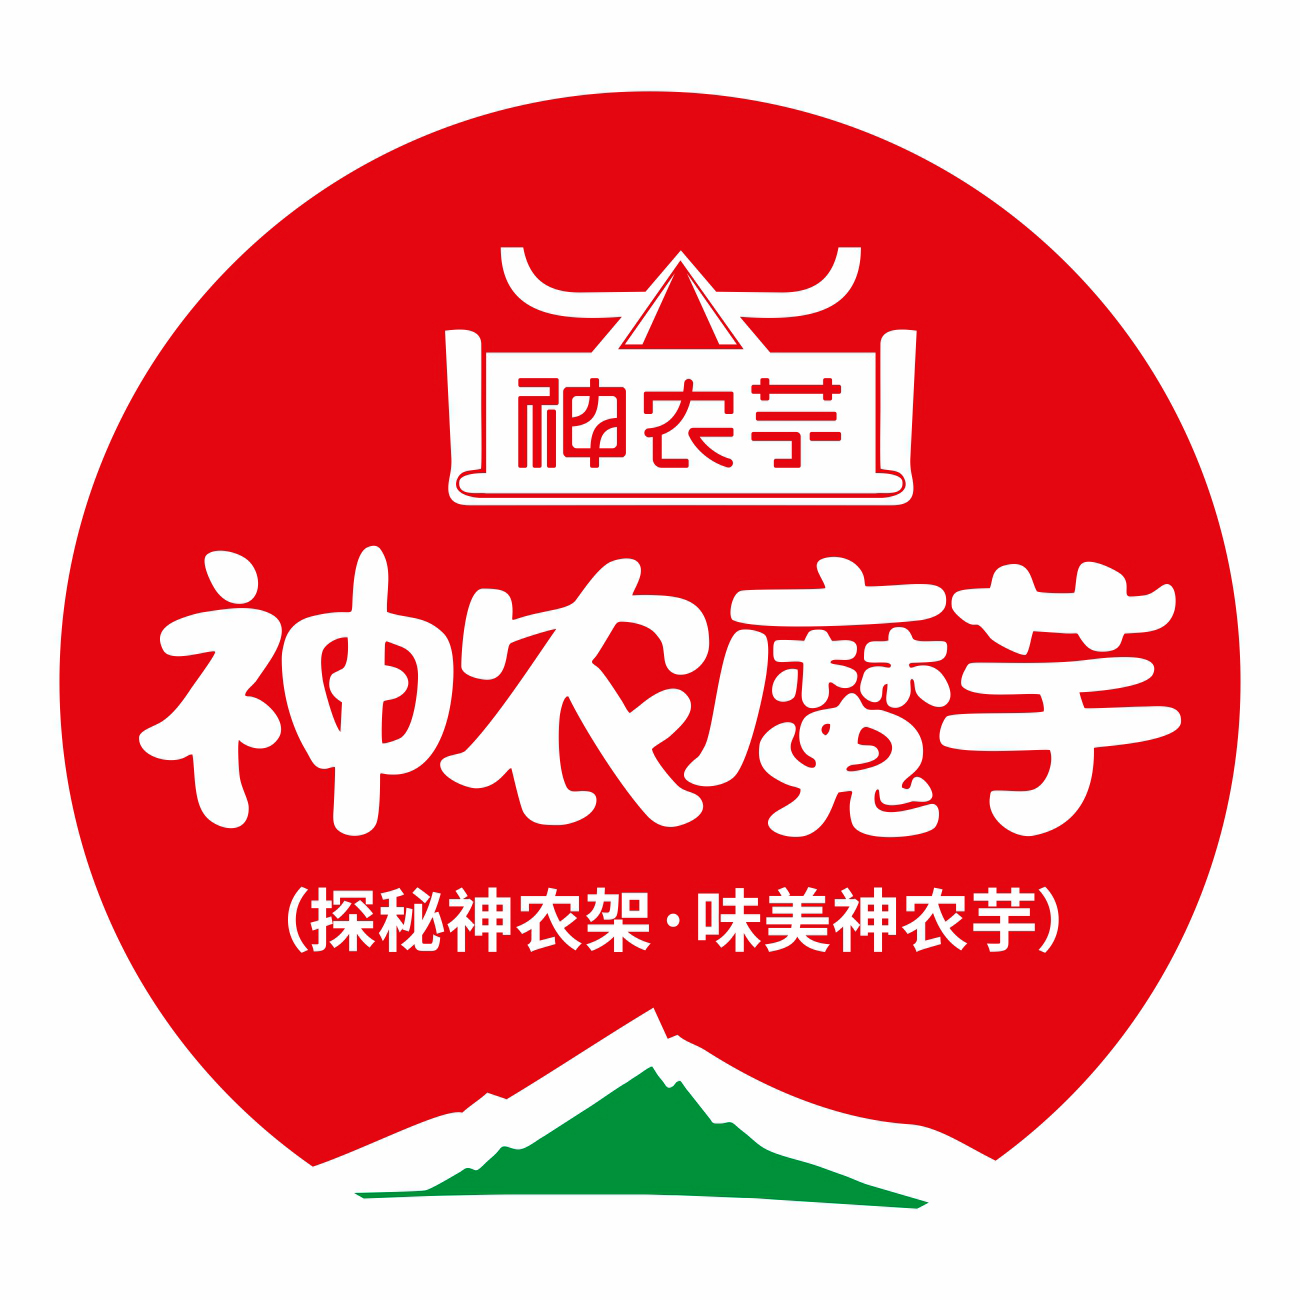 神农芋食品旗舰店